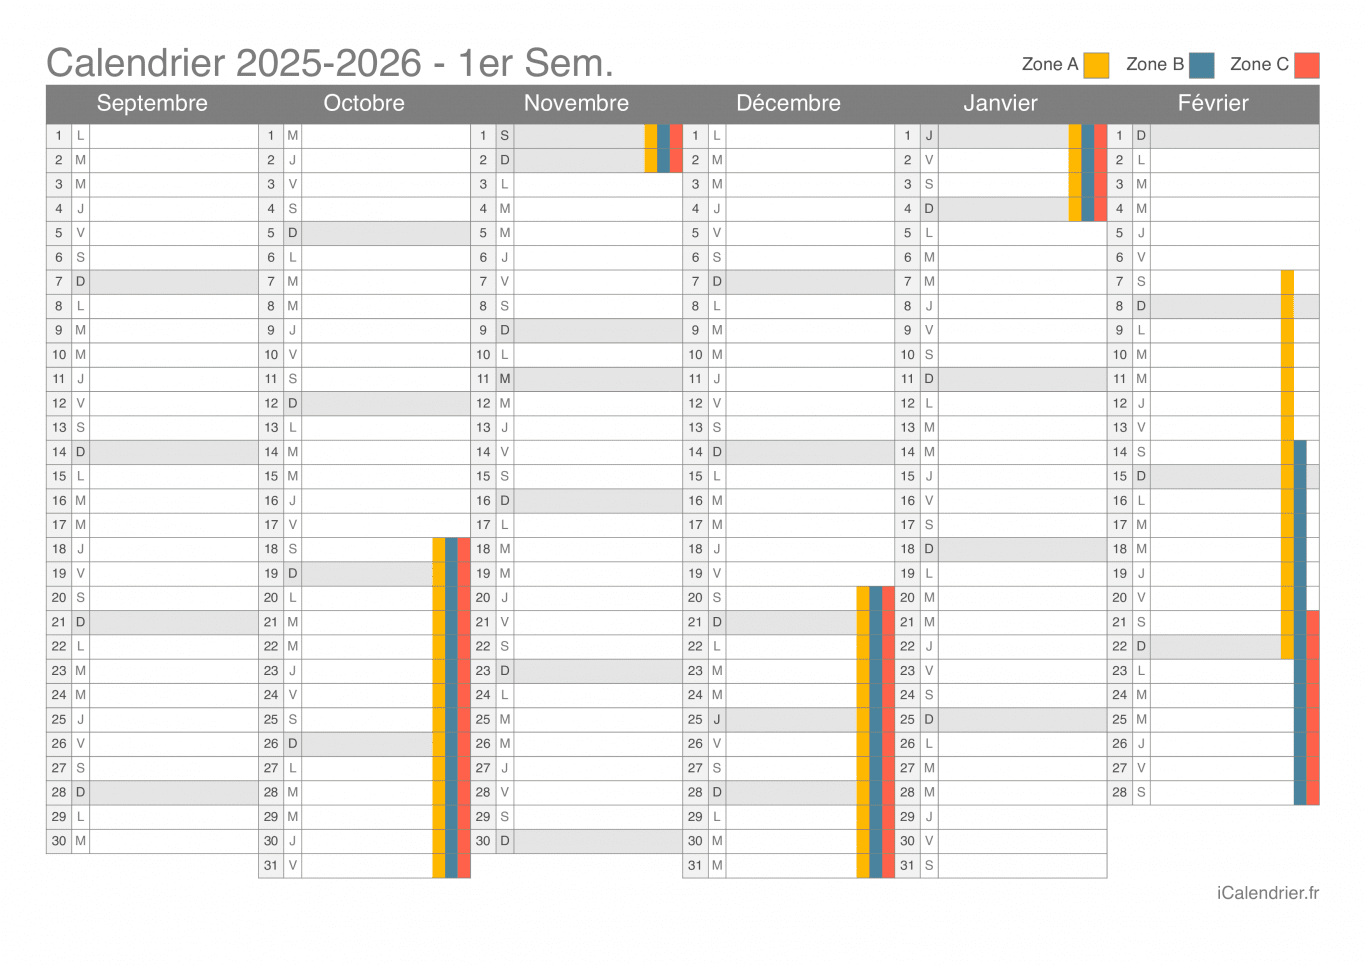 Calendrier des vacances scolaires 2025-2026 par semestre